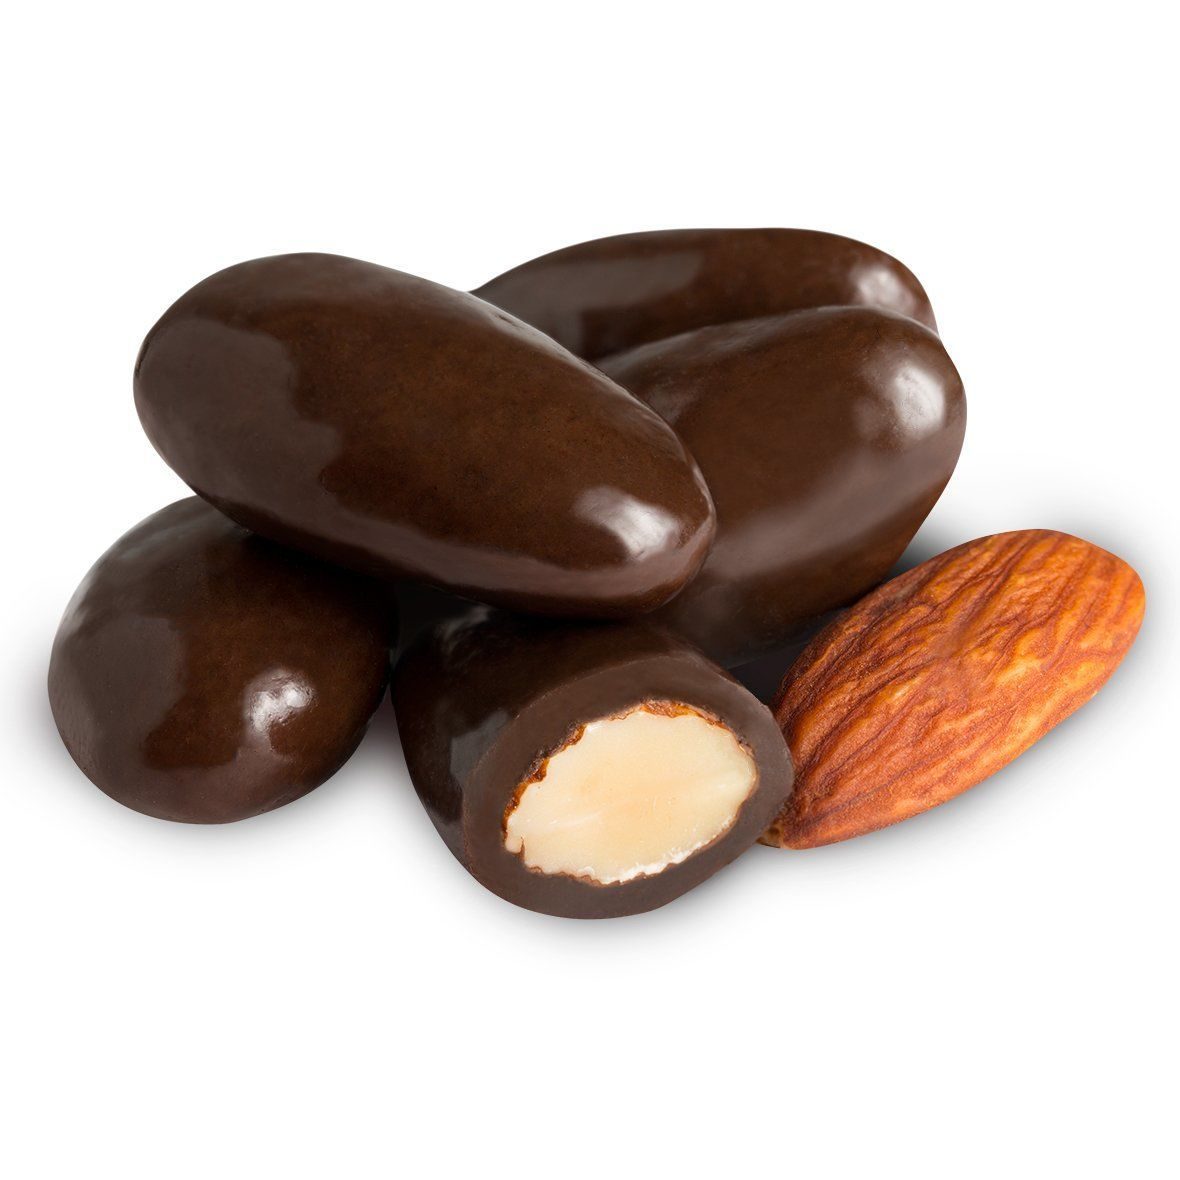 надо ли замачивать орехи перед употреблением надо ли замачивать орехи перед употреблением пошагово